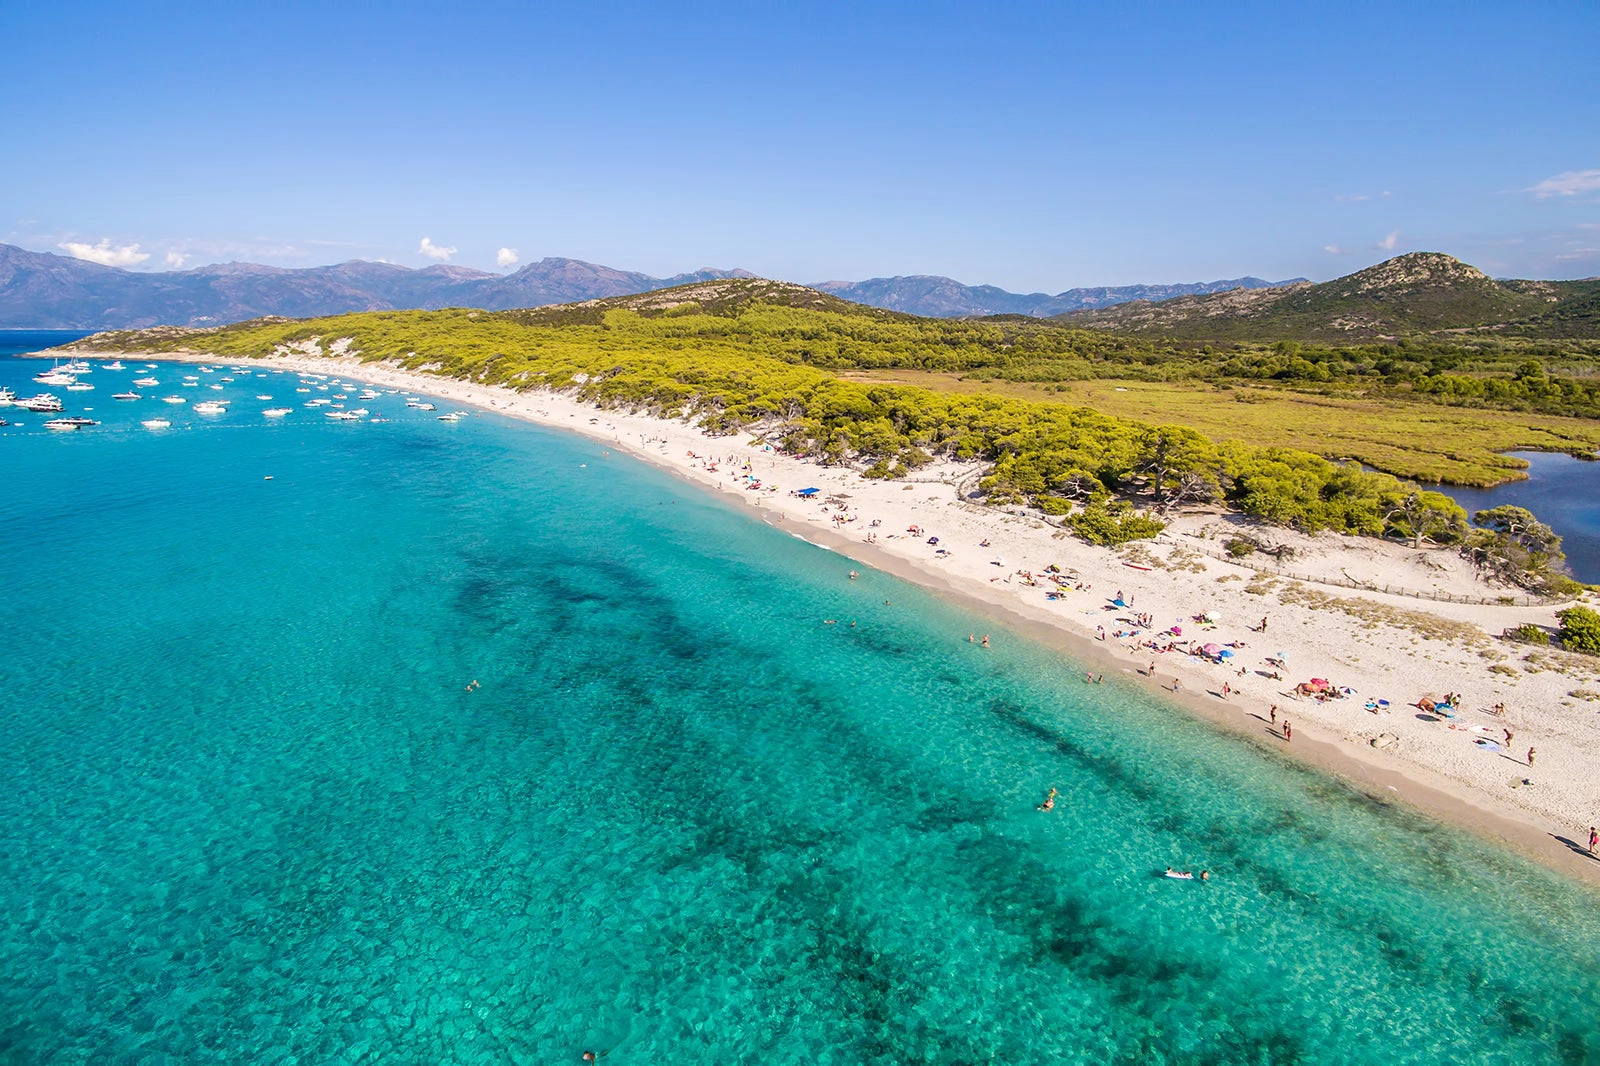  Saleccia  strand - Corsica